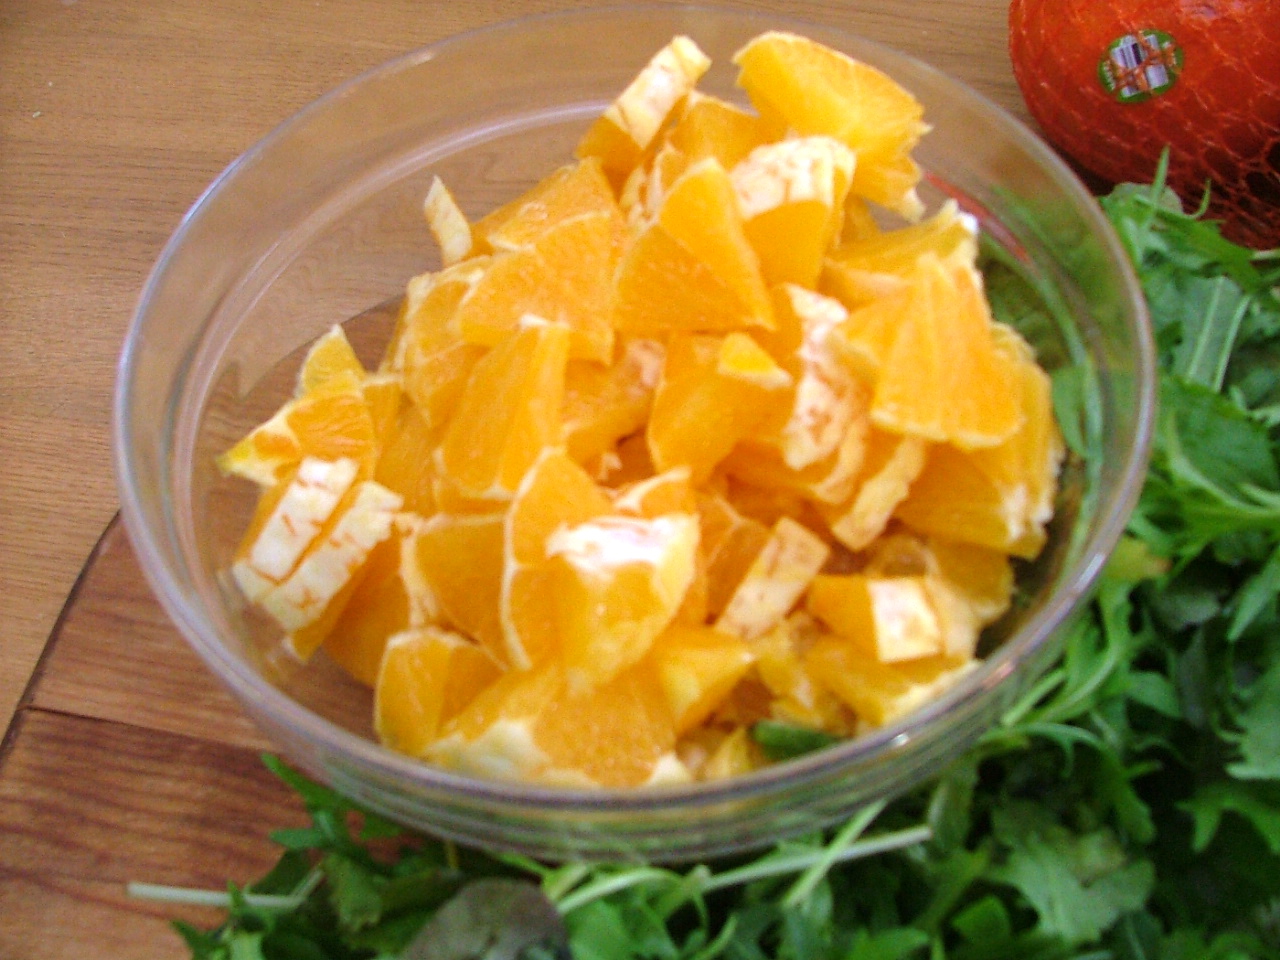 Chopped orange